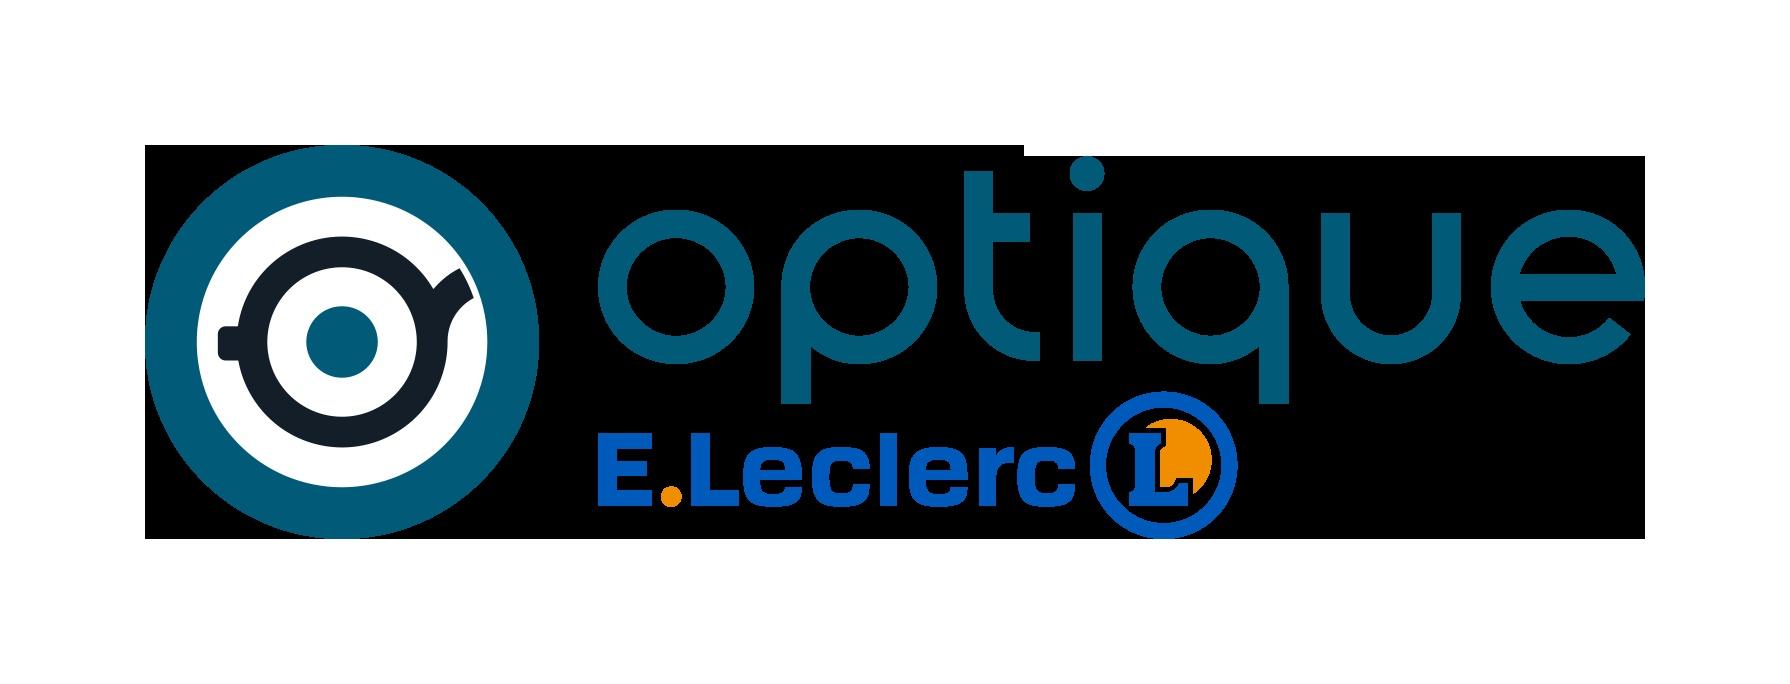 E.leclerc Optique Chaponnay